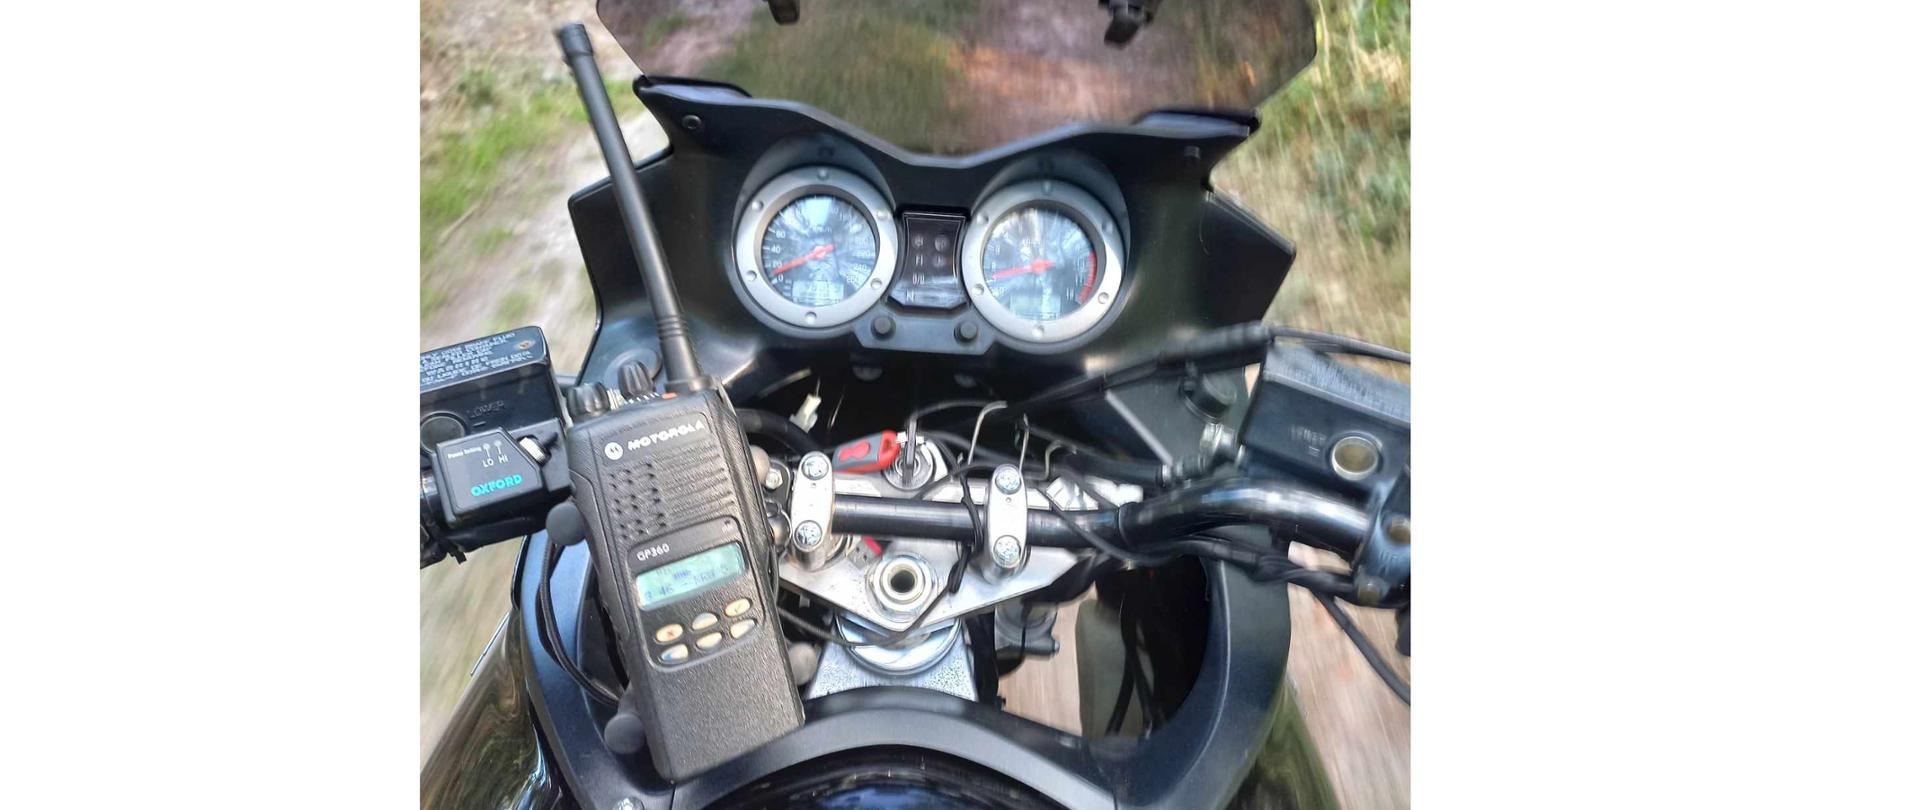 Widok zegarów motocykla na których leży radiostacja nasobna